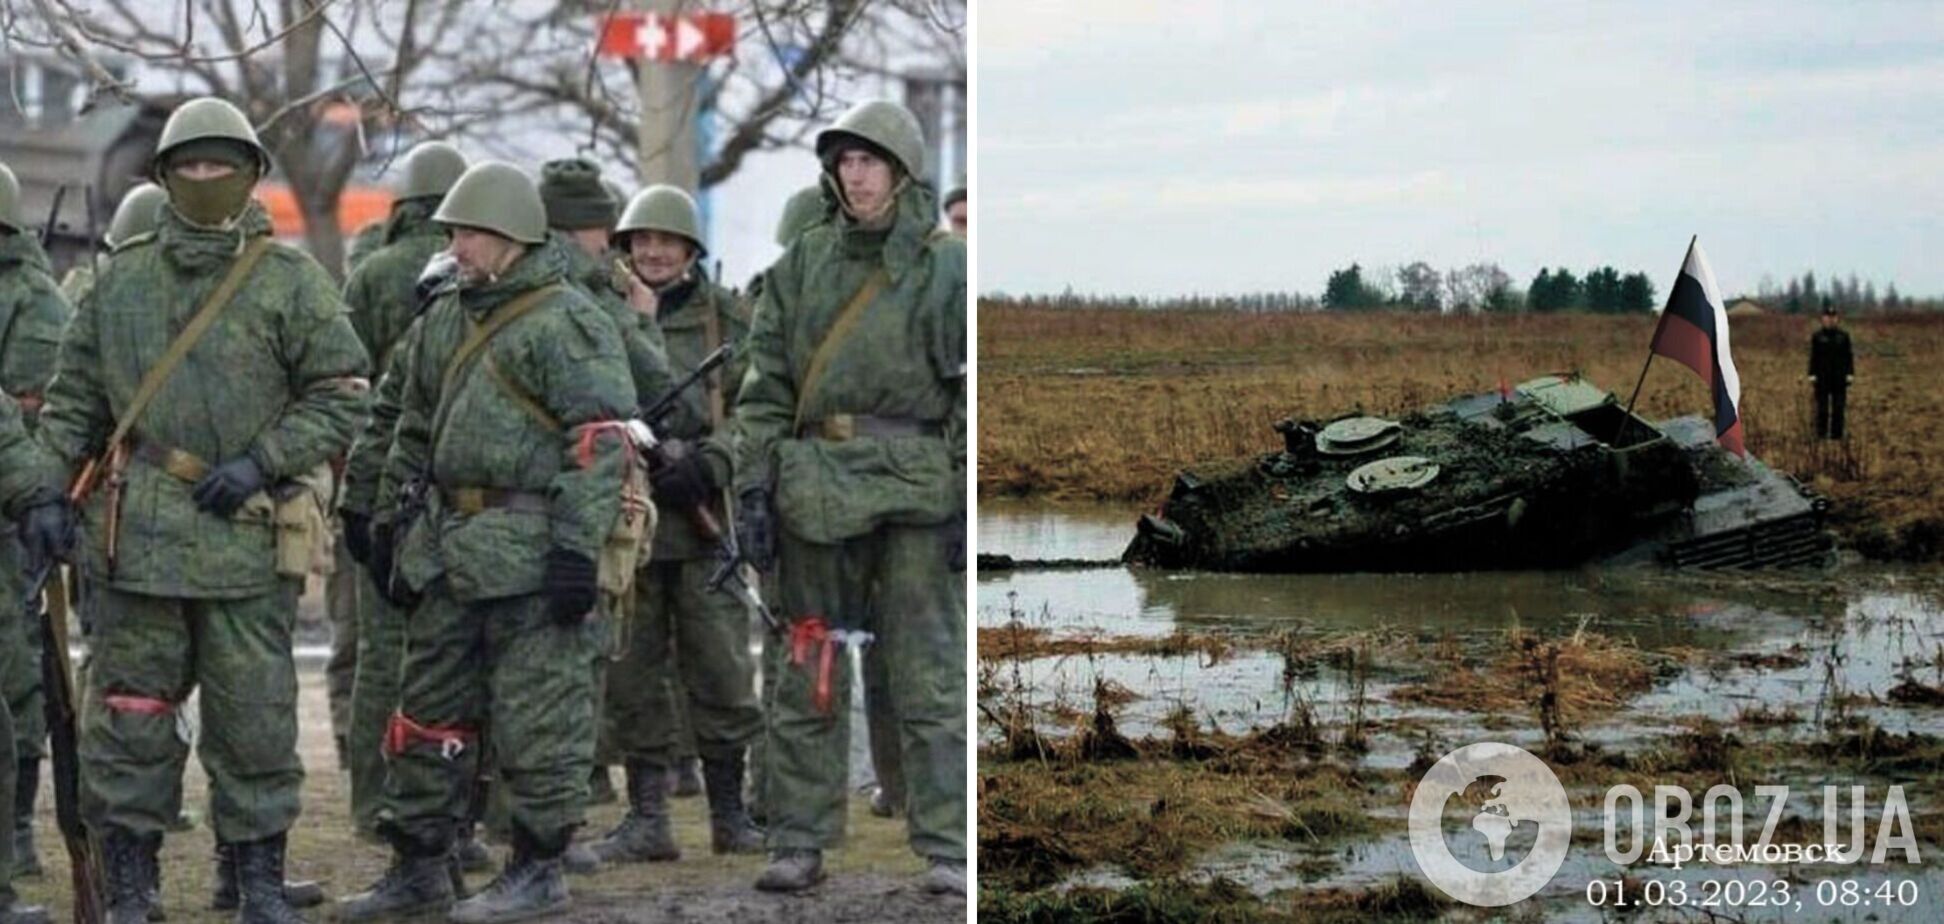 Окупанти похвалилися захопленням танка Leopard з 'польськими найманцями' і феєрично зганьбилися. Фото